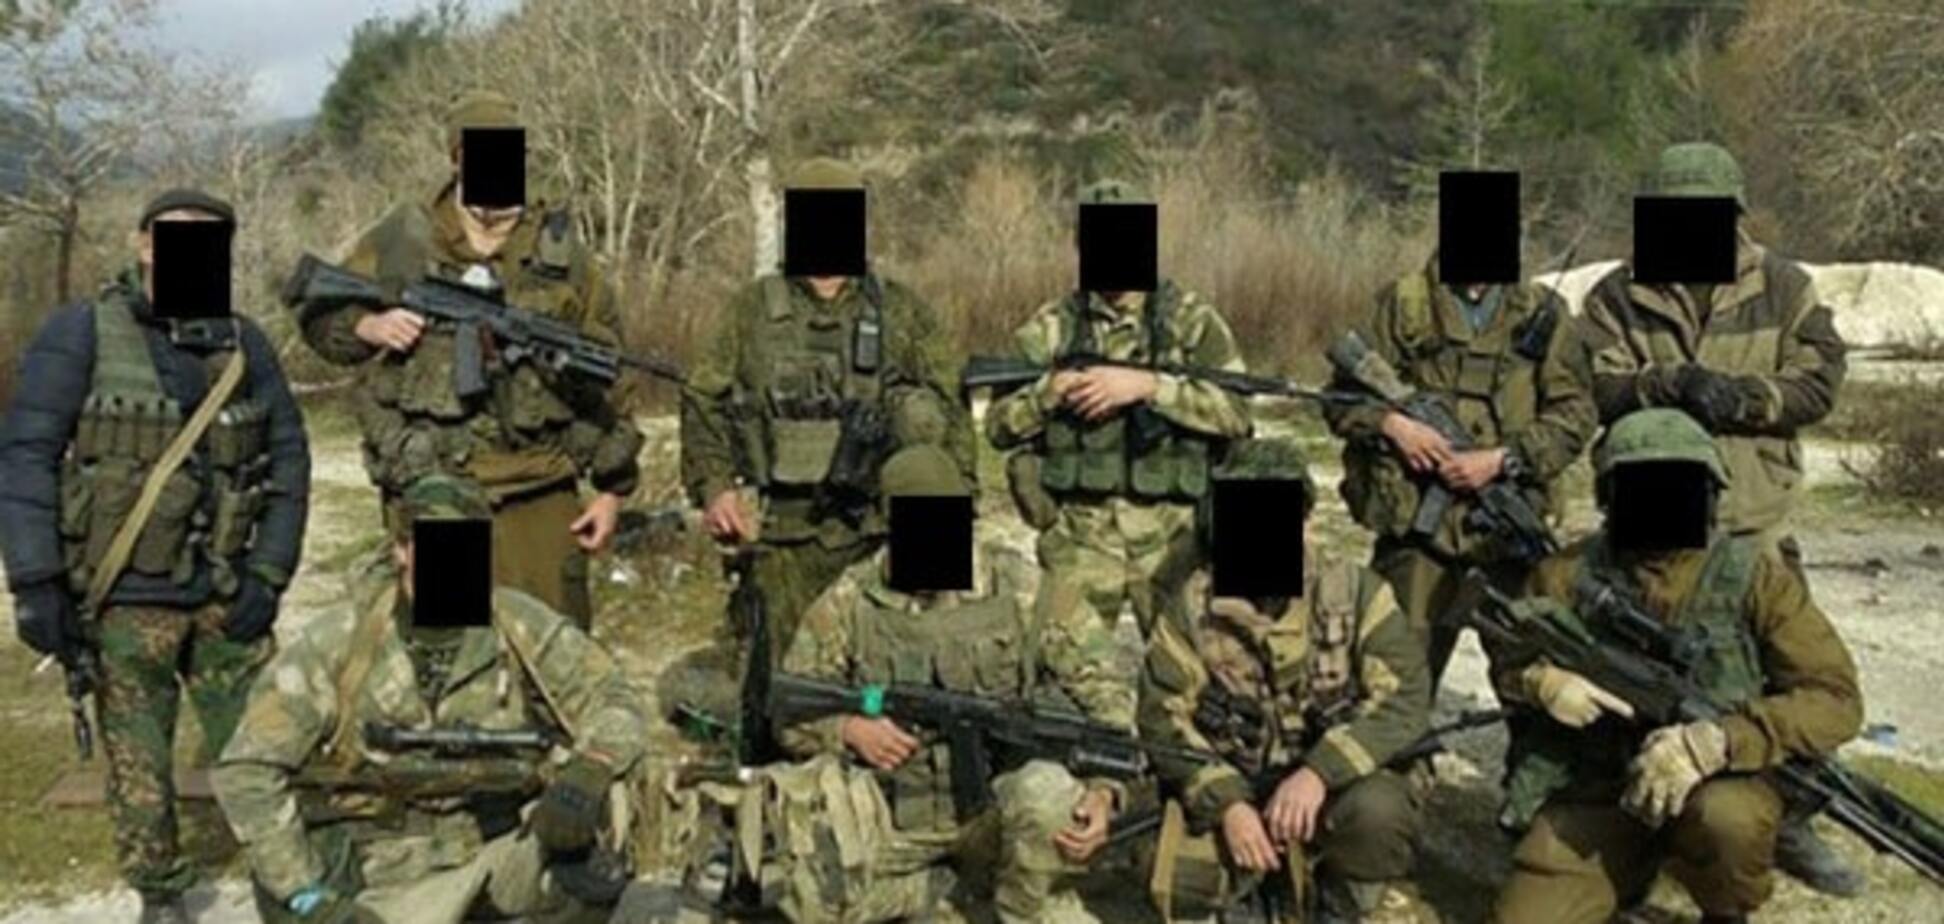 Кремль посылает в Украину и Сирию бойцов 'несуществующей' военной компании: расследование